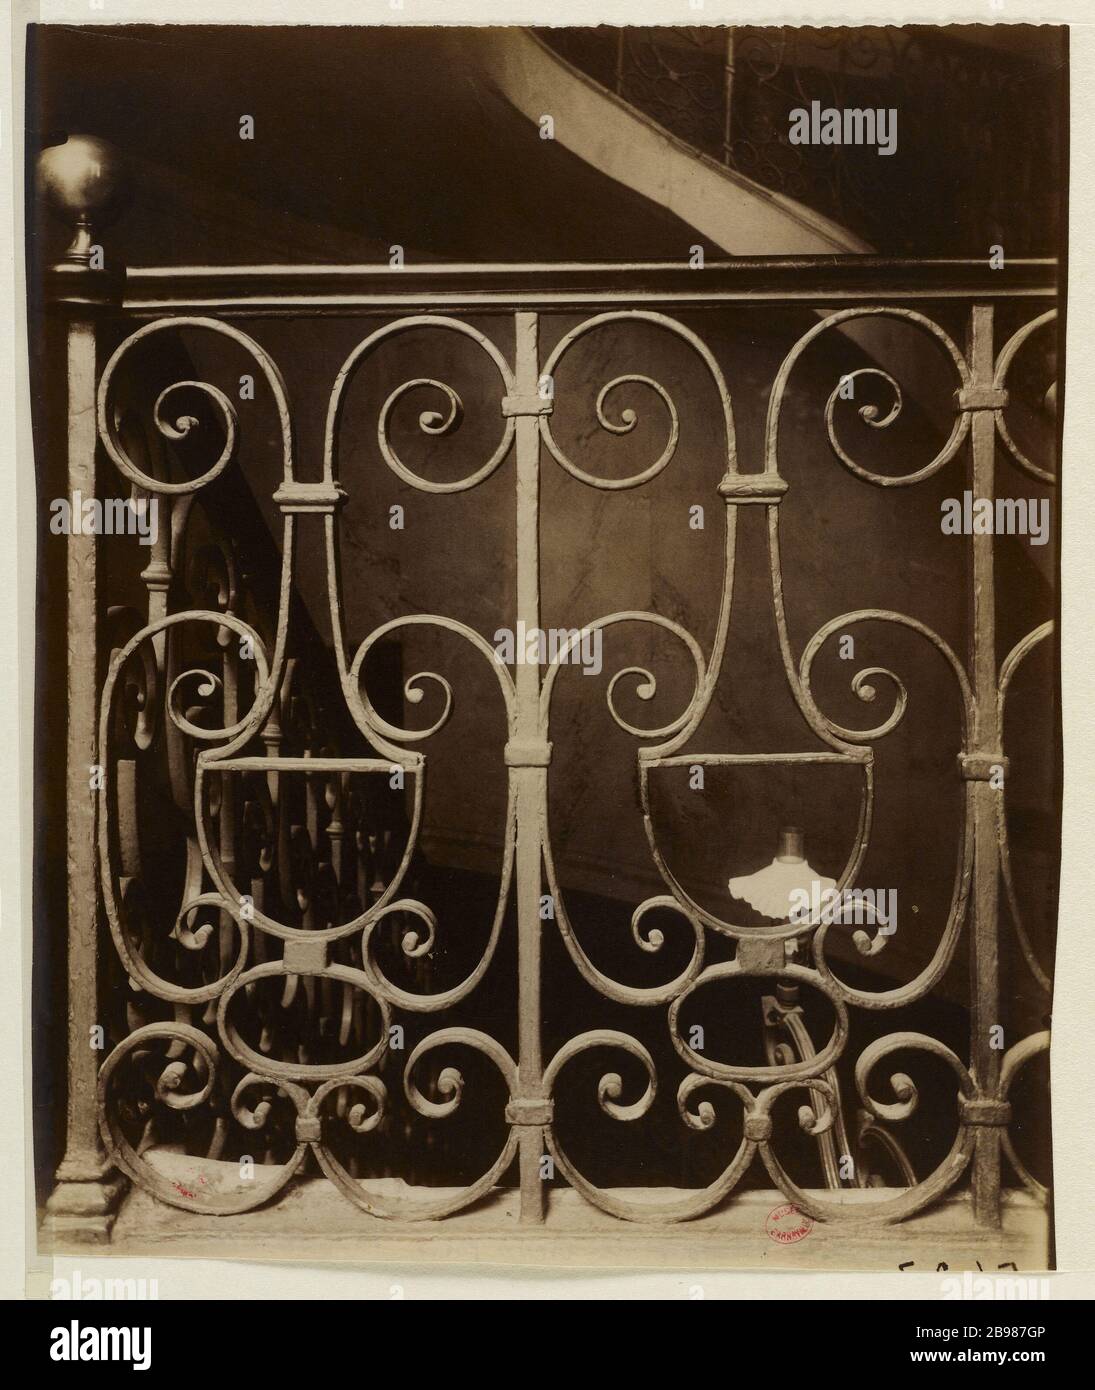 STAIRS, 13 VIVIENNE GALLERY, 2ND DISTRICT, PARIS Escalier, 13 galerie Vivienne, Paris (IIème arr.), 1907. Photographie d'Eugène Atget (1857-1927). Paris, musée Carnavalet. Stock Photo